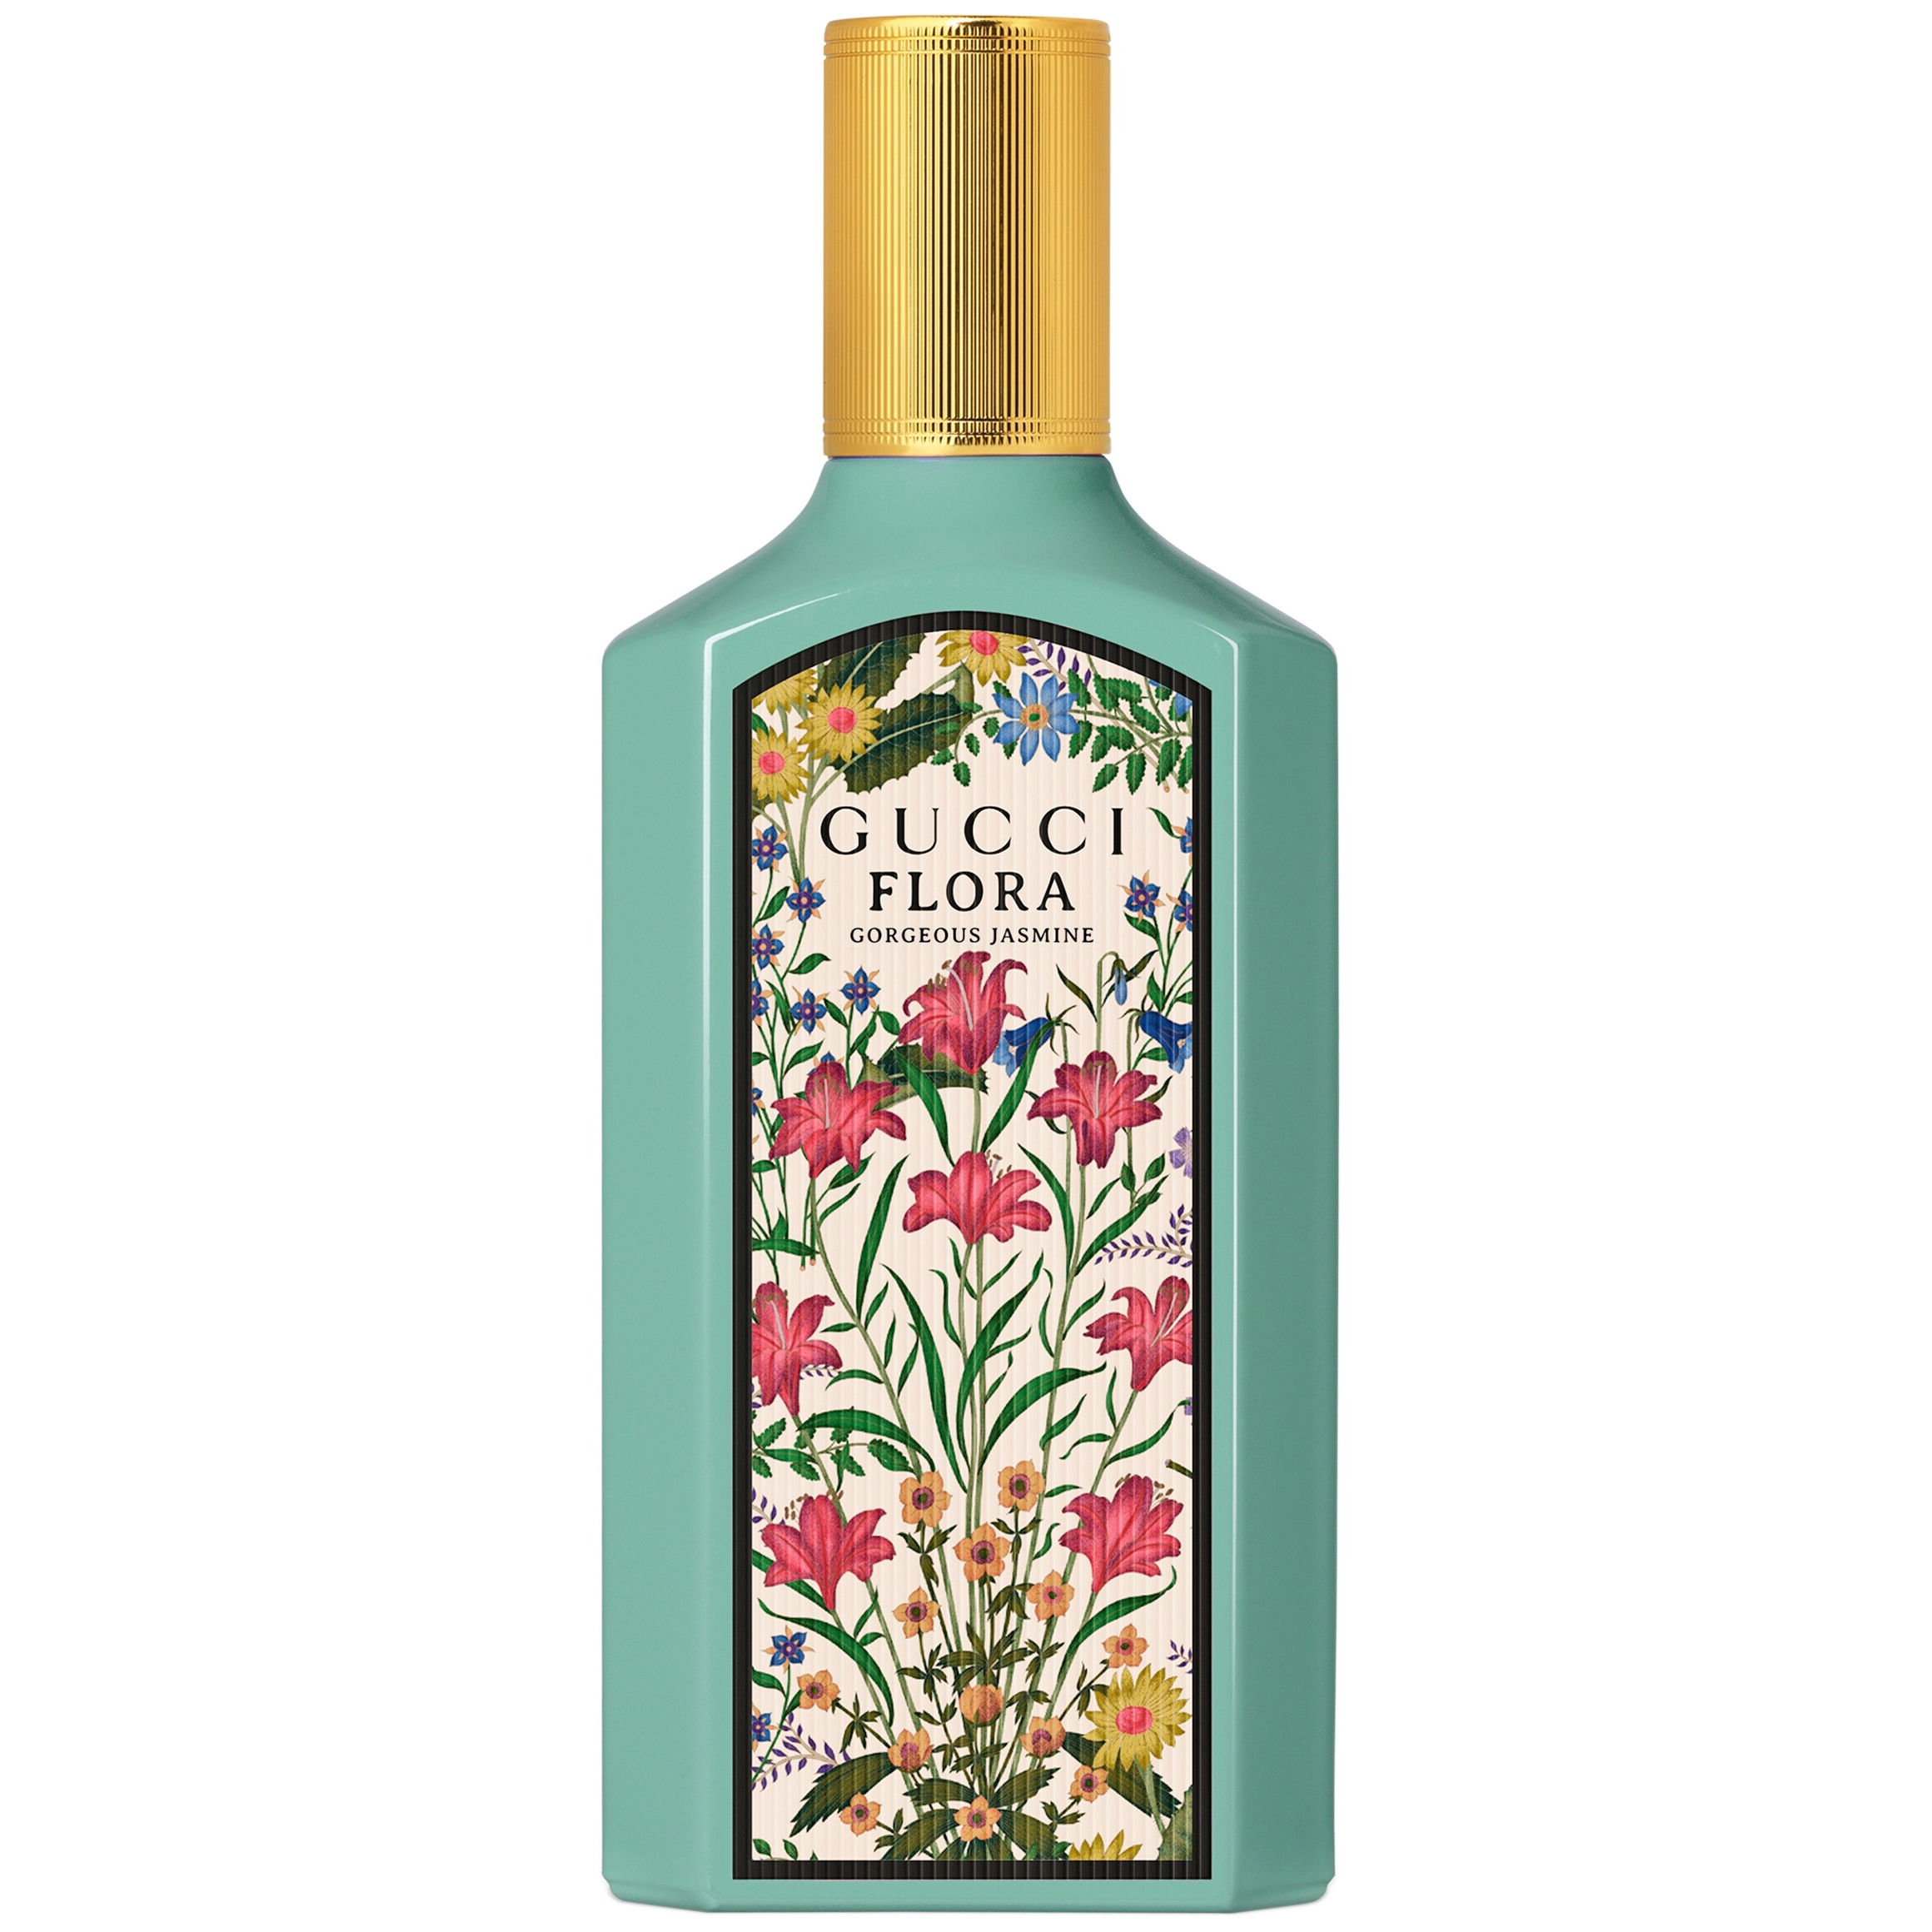 Gucci Flora Gorgeous Jasmine Eau de parfum spray 150 ml